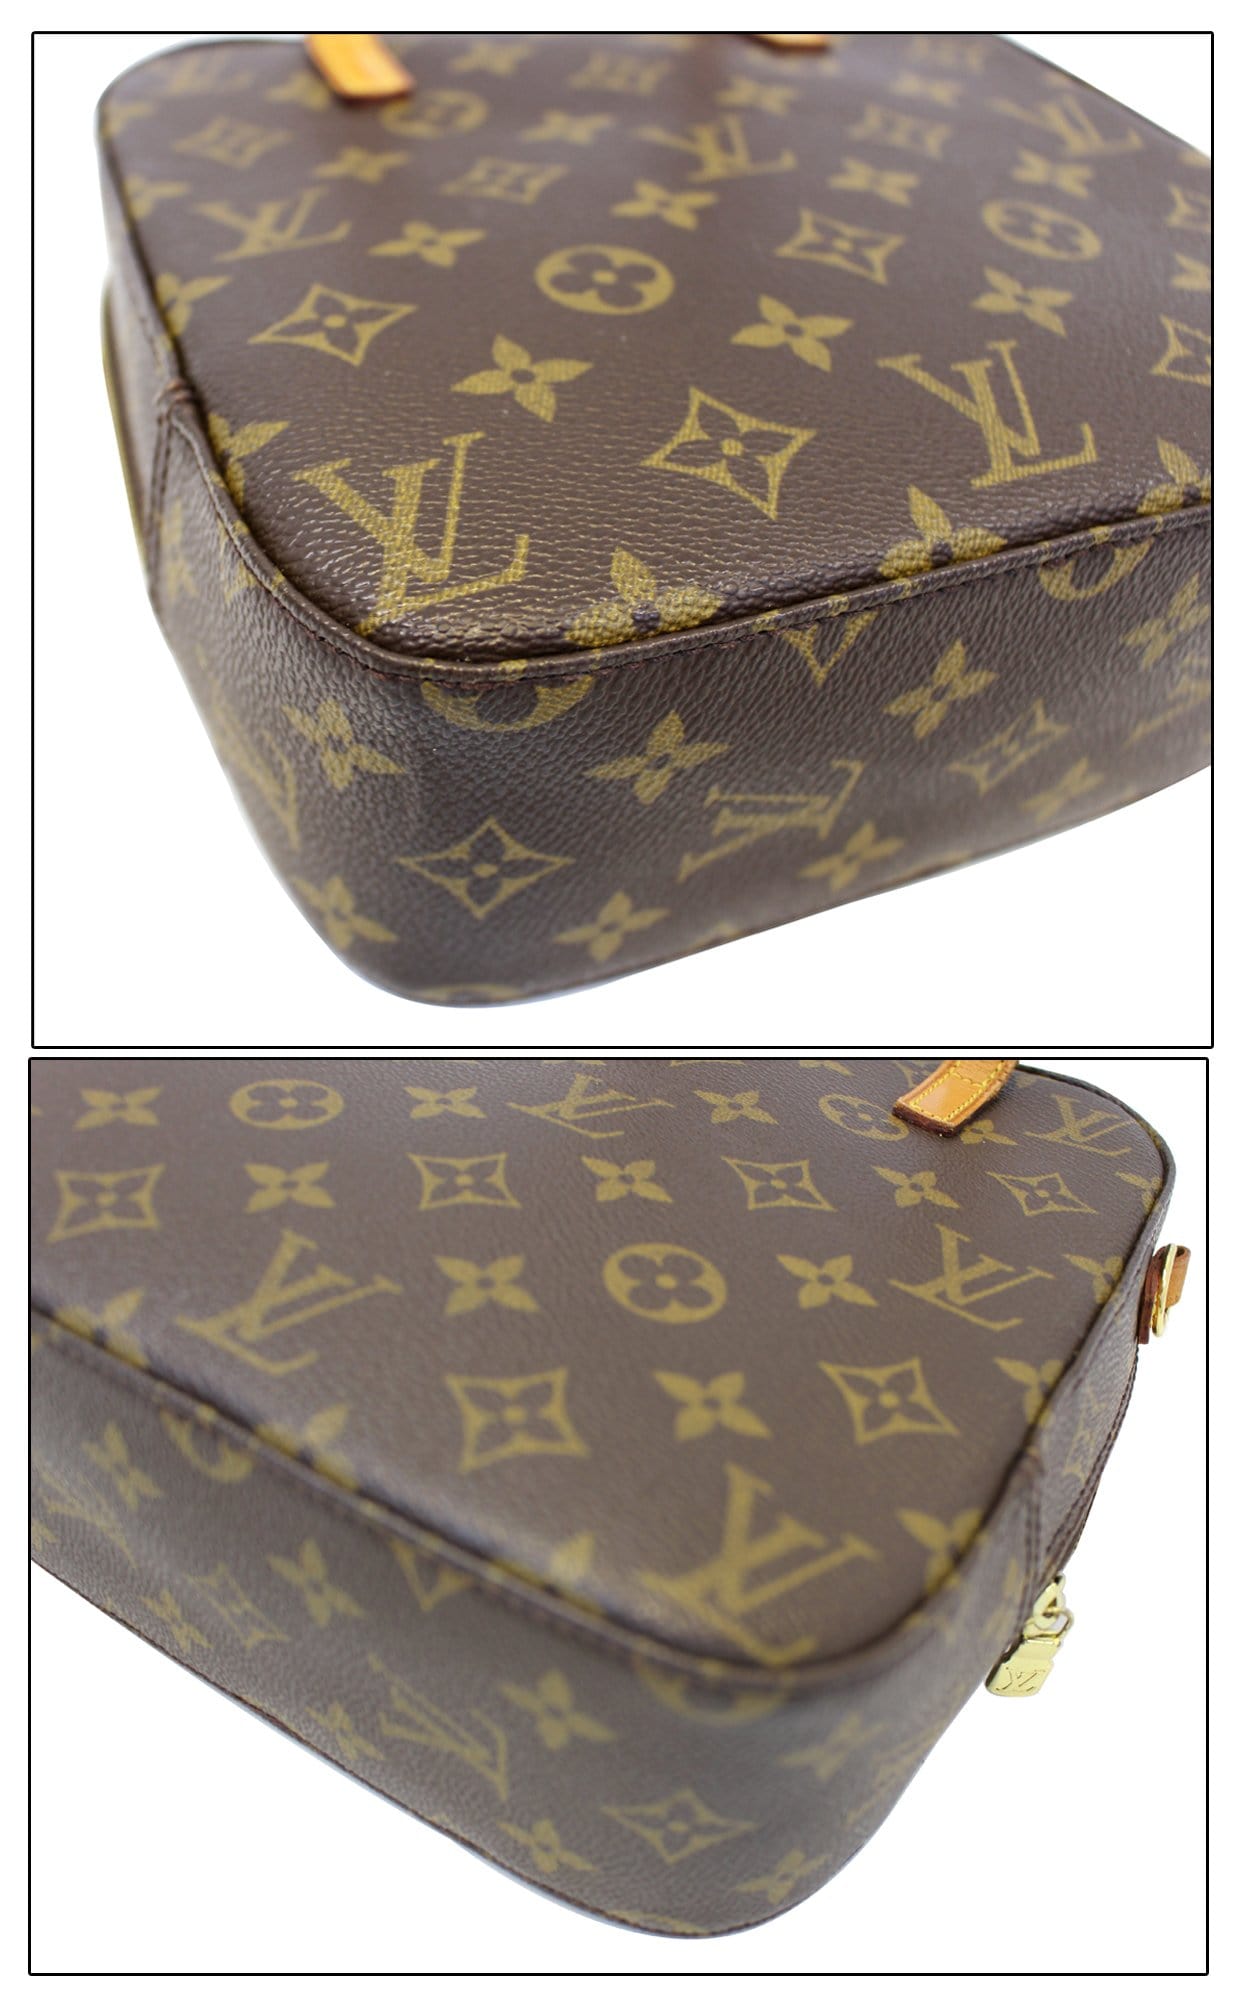 Louis Vuitton Spontini Canvas Shoulder Bag